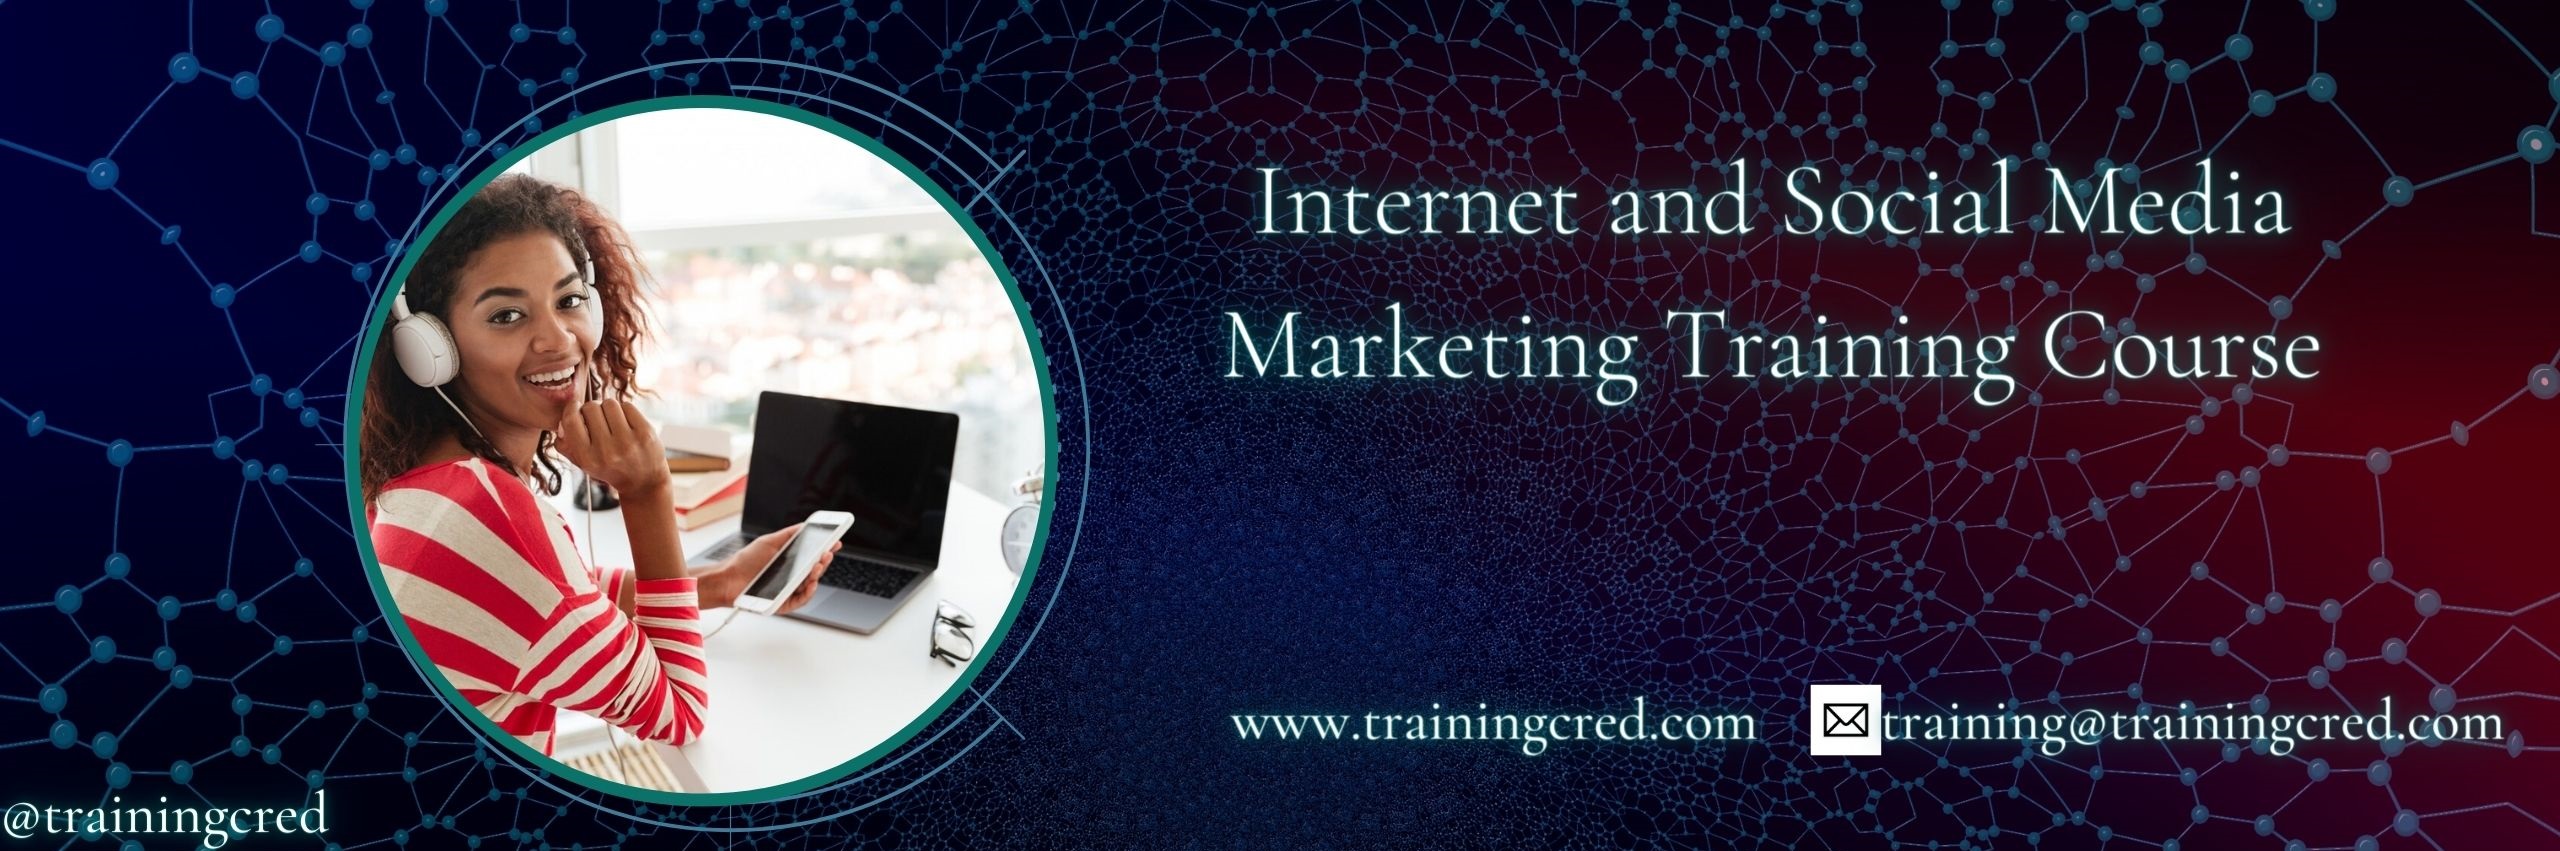 Internet and Social Media Marketing Training